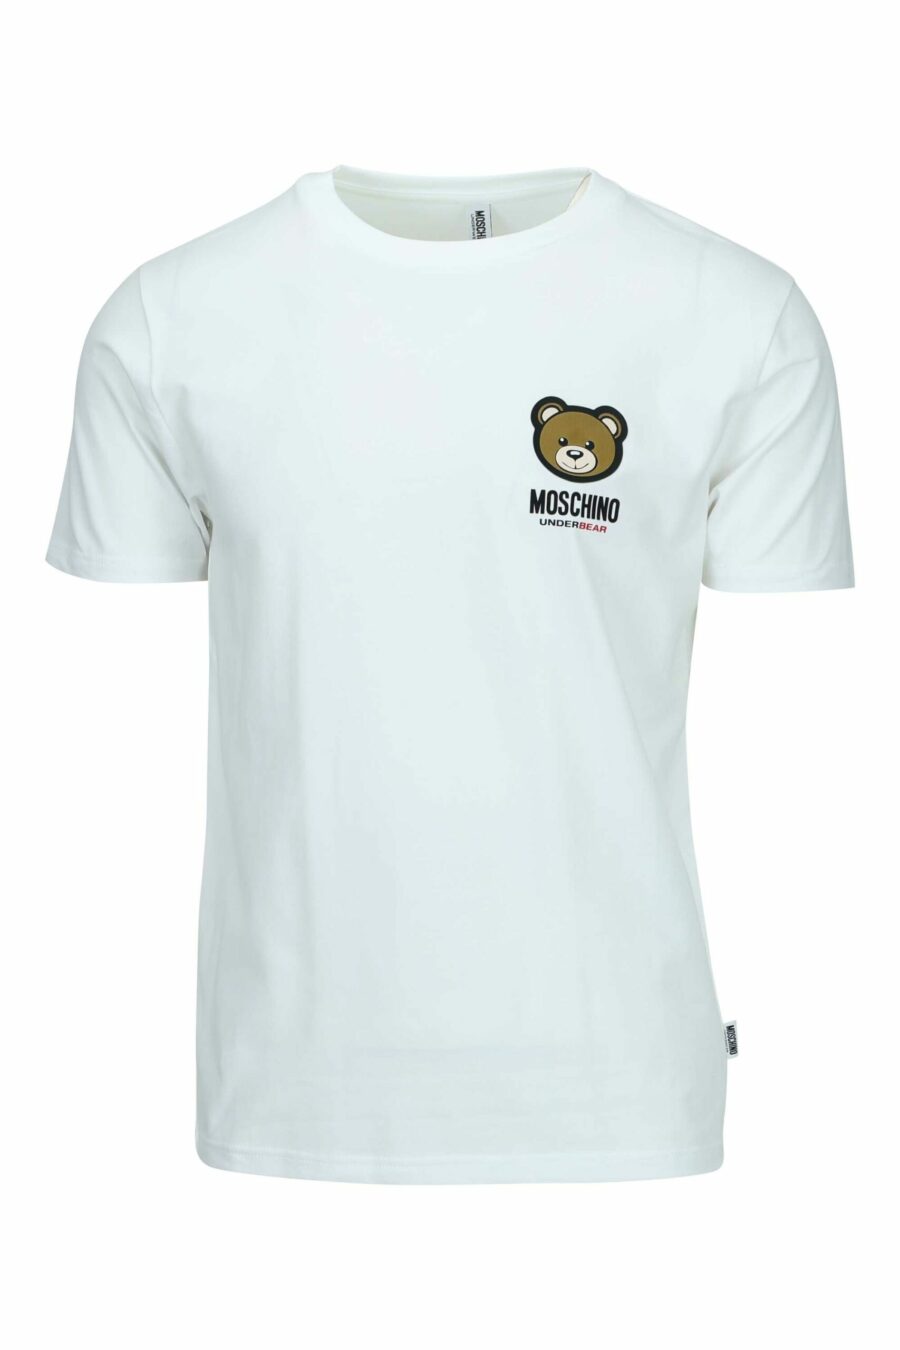 Weißes T-Shirt mit Mini-Logo-Bärenaufnäher "underbear" - 667113605678 skaliert